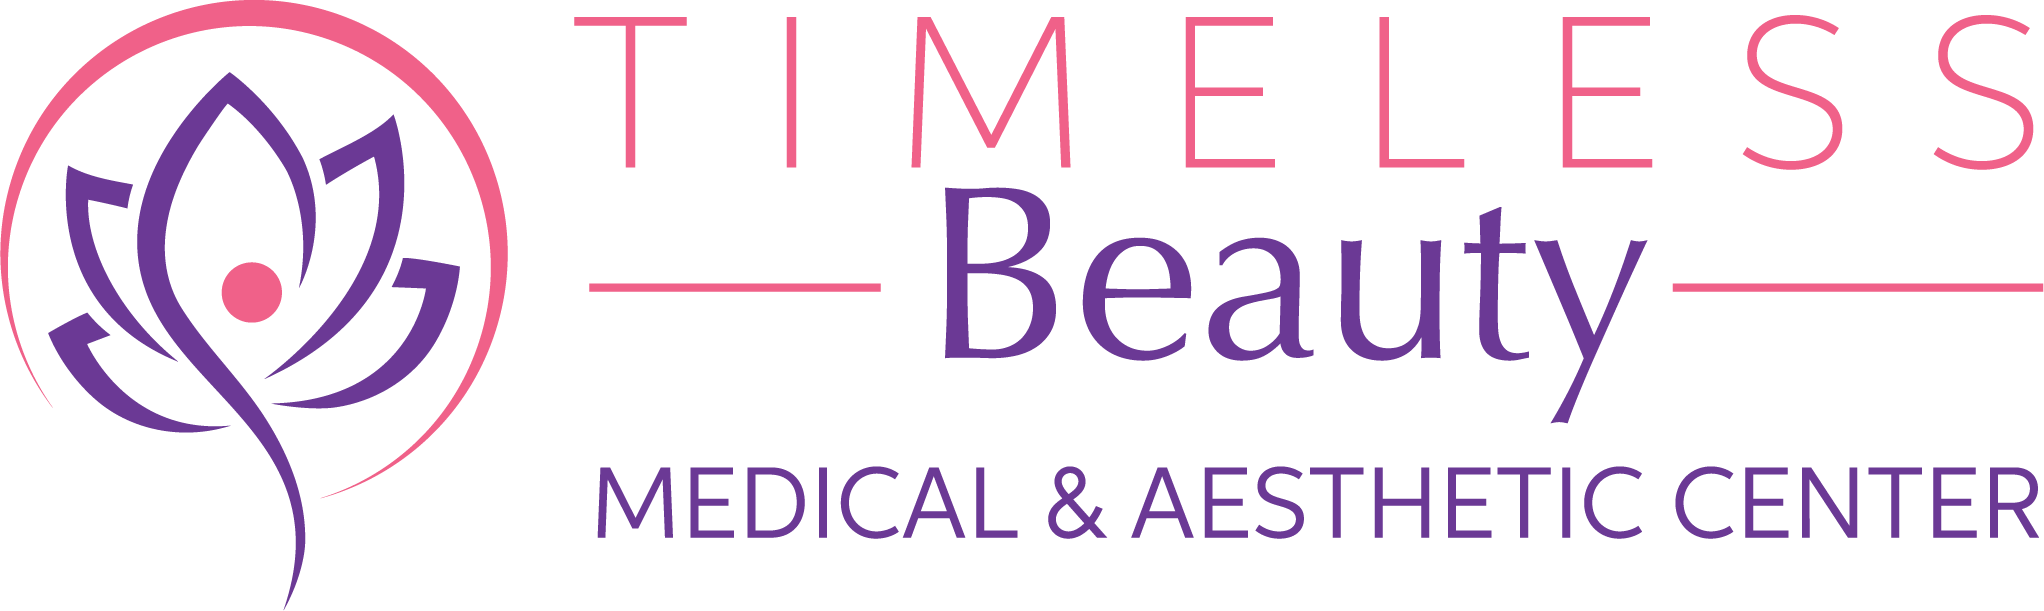 Timeless Beauty Medical & Aesthetic Center logo